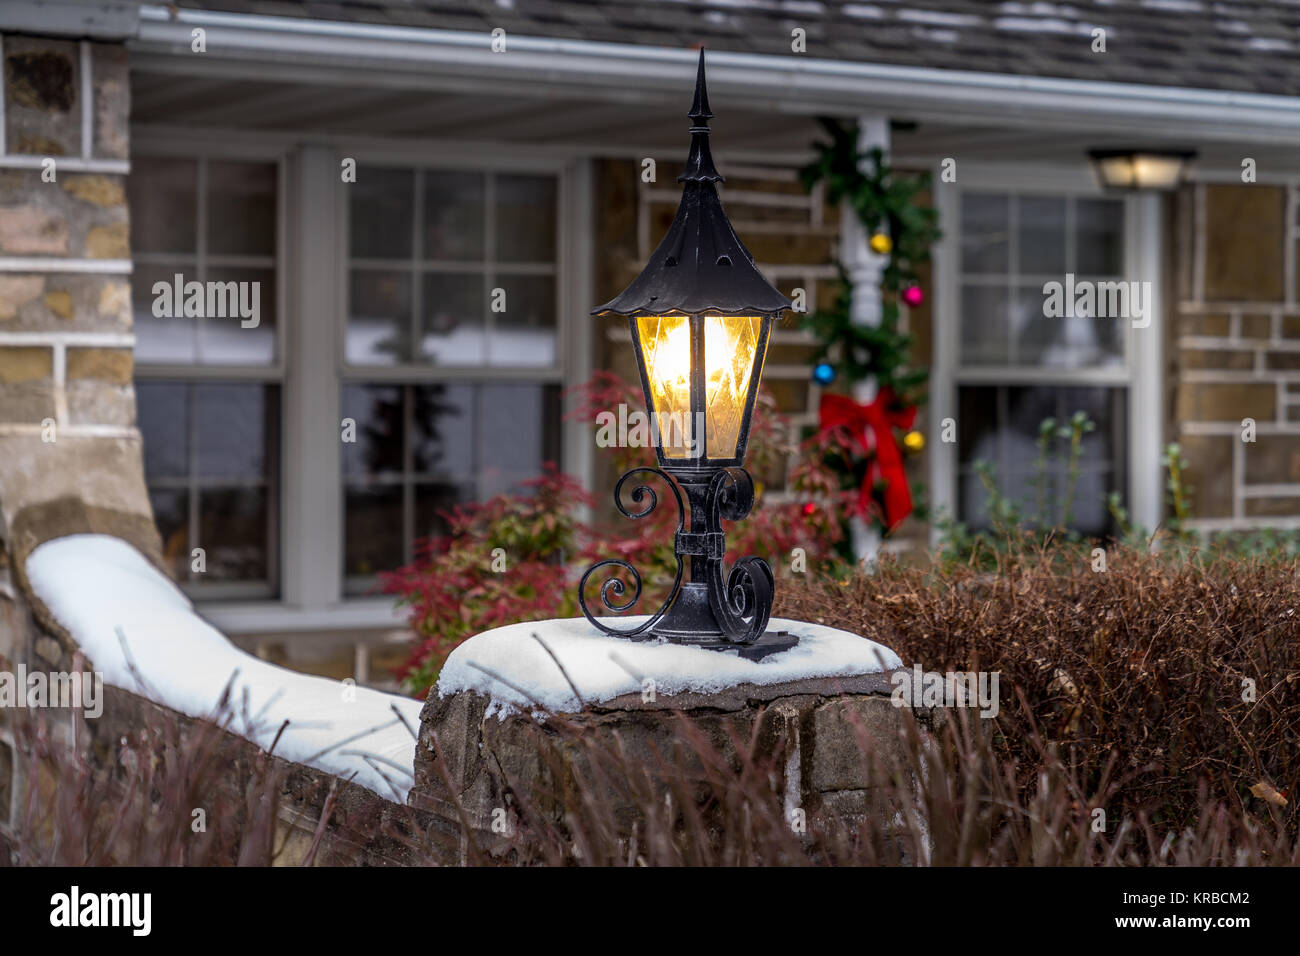 Beleuchtete outdoor Laterne mit weißer Schnee gibt einen zusätzlichen Charakter für einen Urlaub Dekor. Urlaub Konzept. Stockfoto